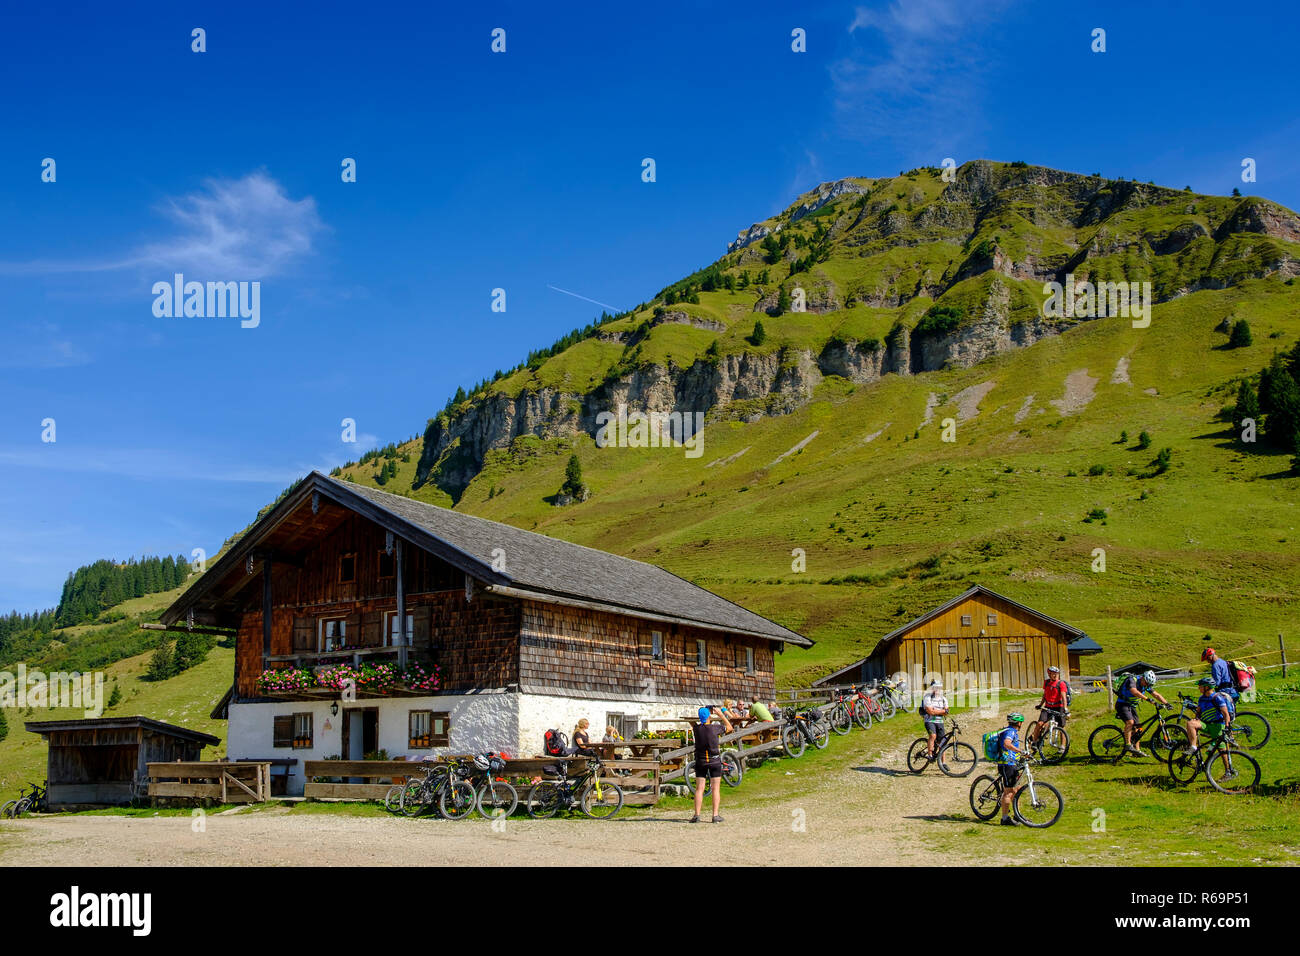 Rotwandhütte, Rotwandalm Juifen, Unter dem, Tirol, Österreich Banque D'Images